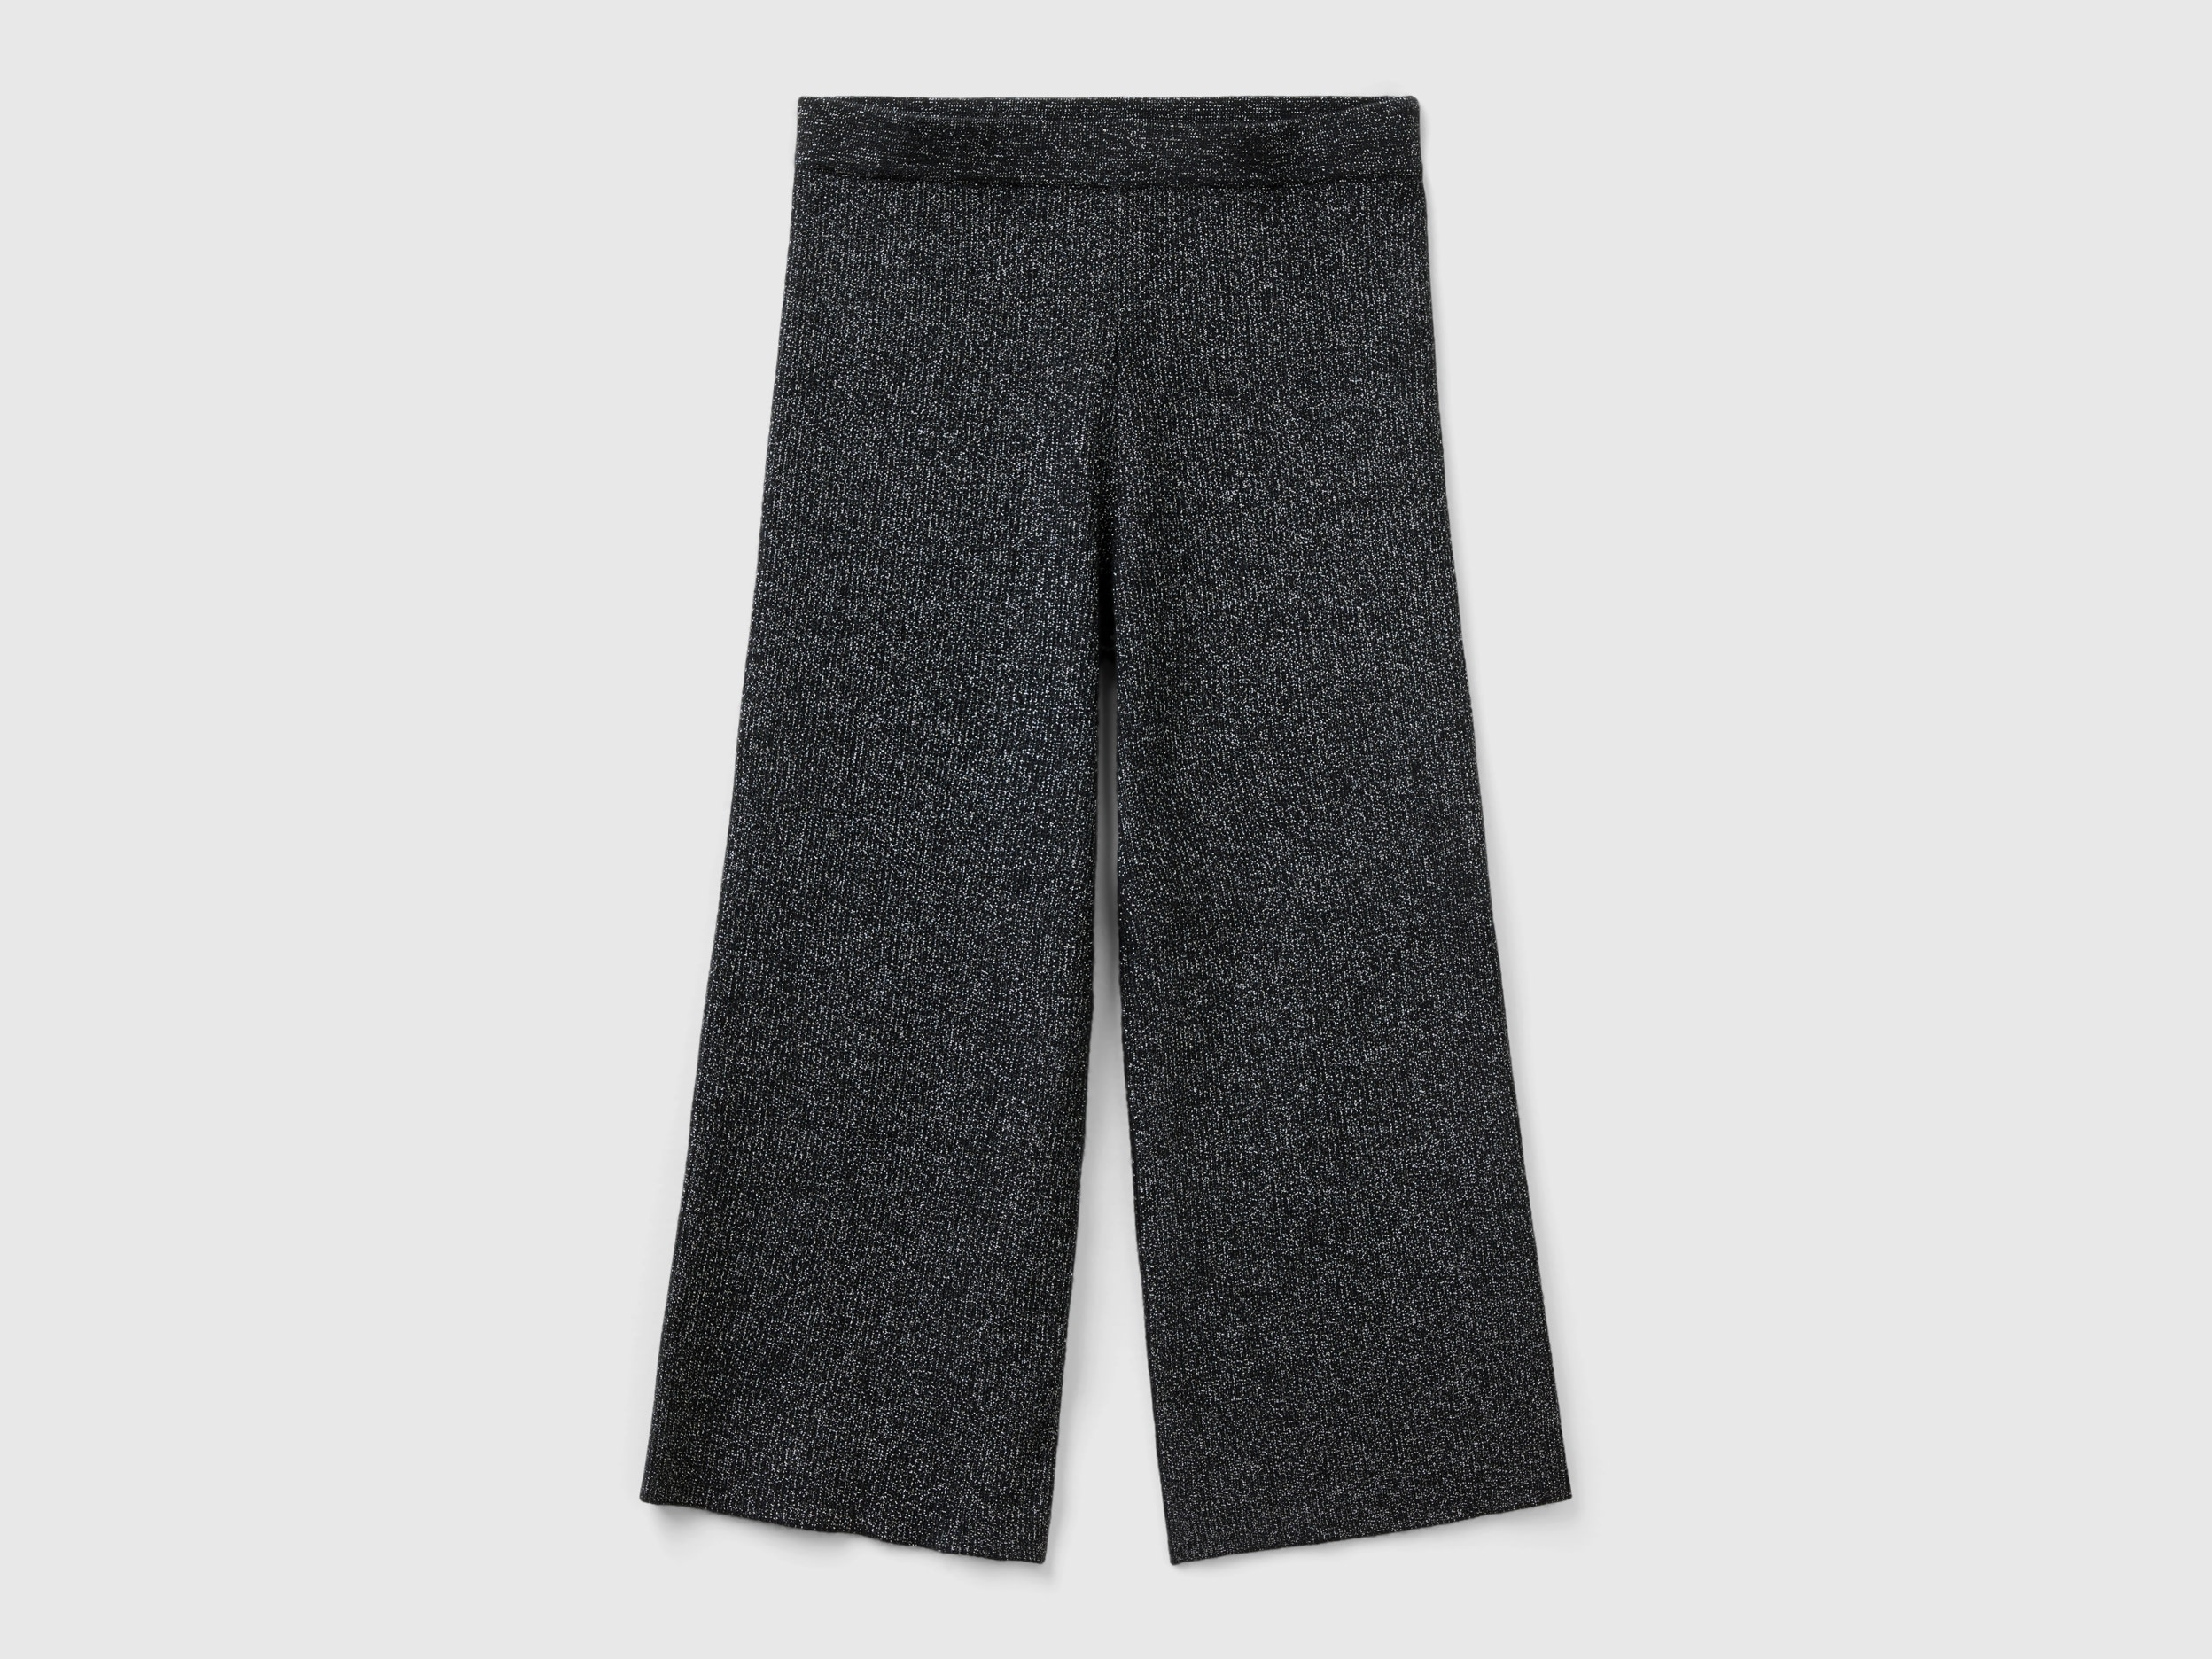 Benetton, Knit Pants With Lurex, size 2XL, Black, Kids